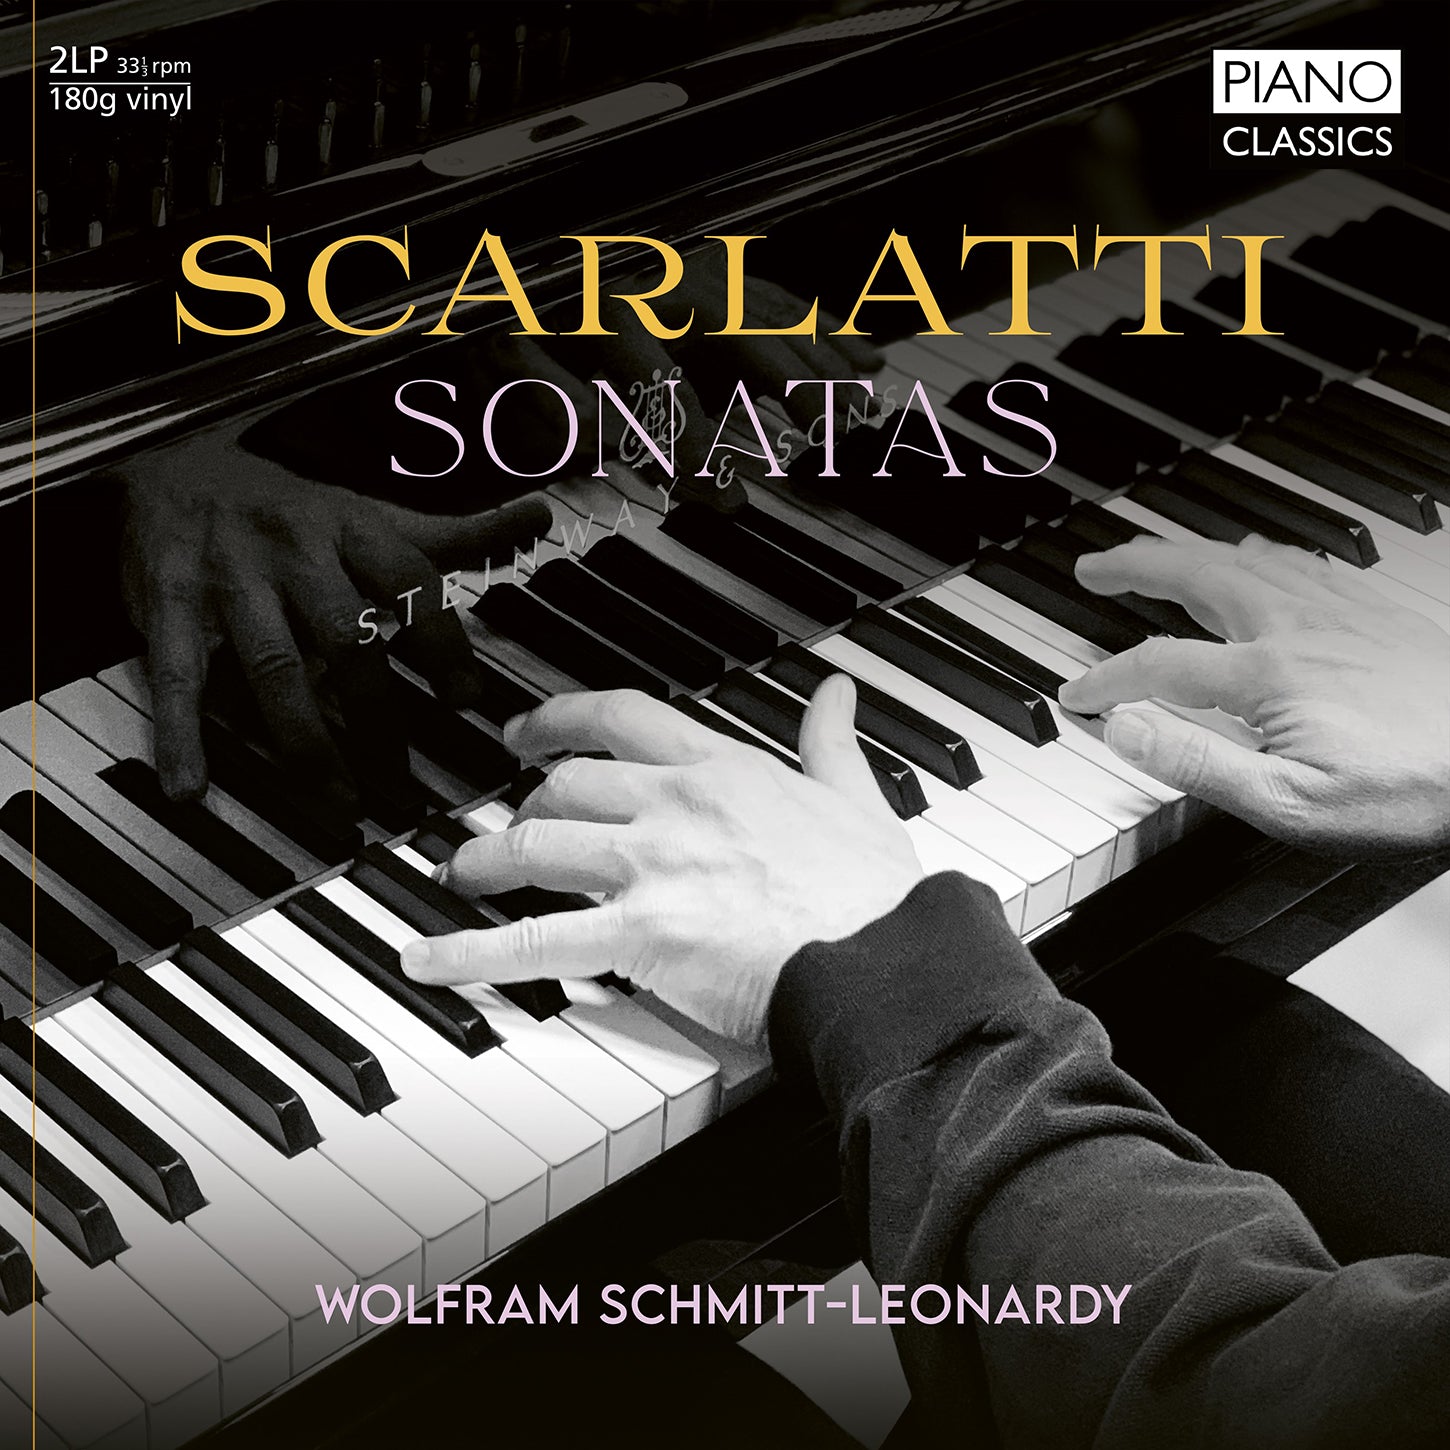 Scarlatti: Sonatas on Vinyl / Schmitt-Leonardy